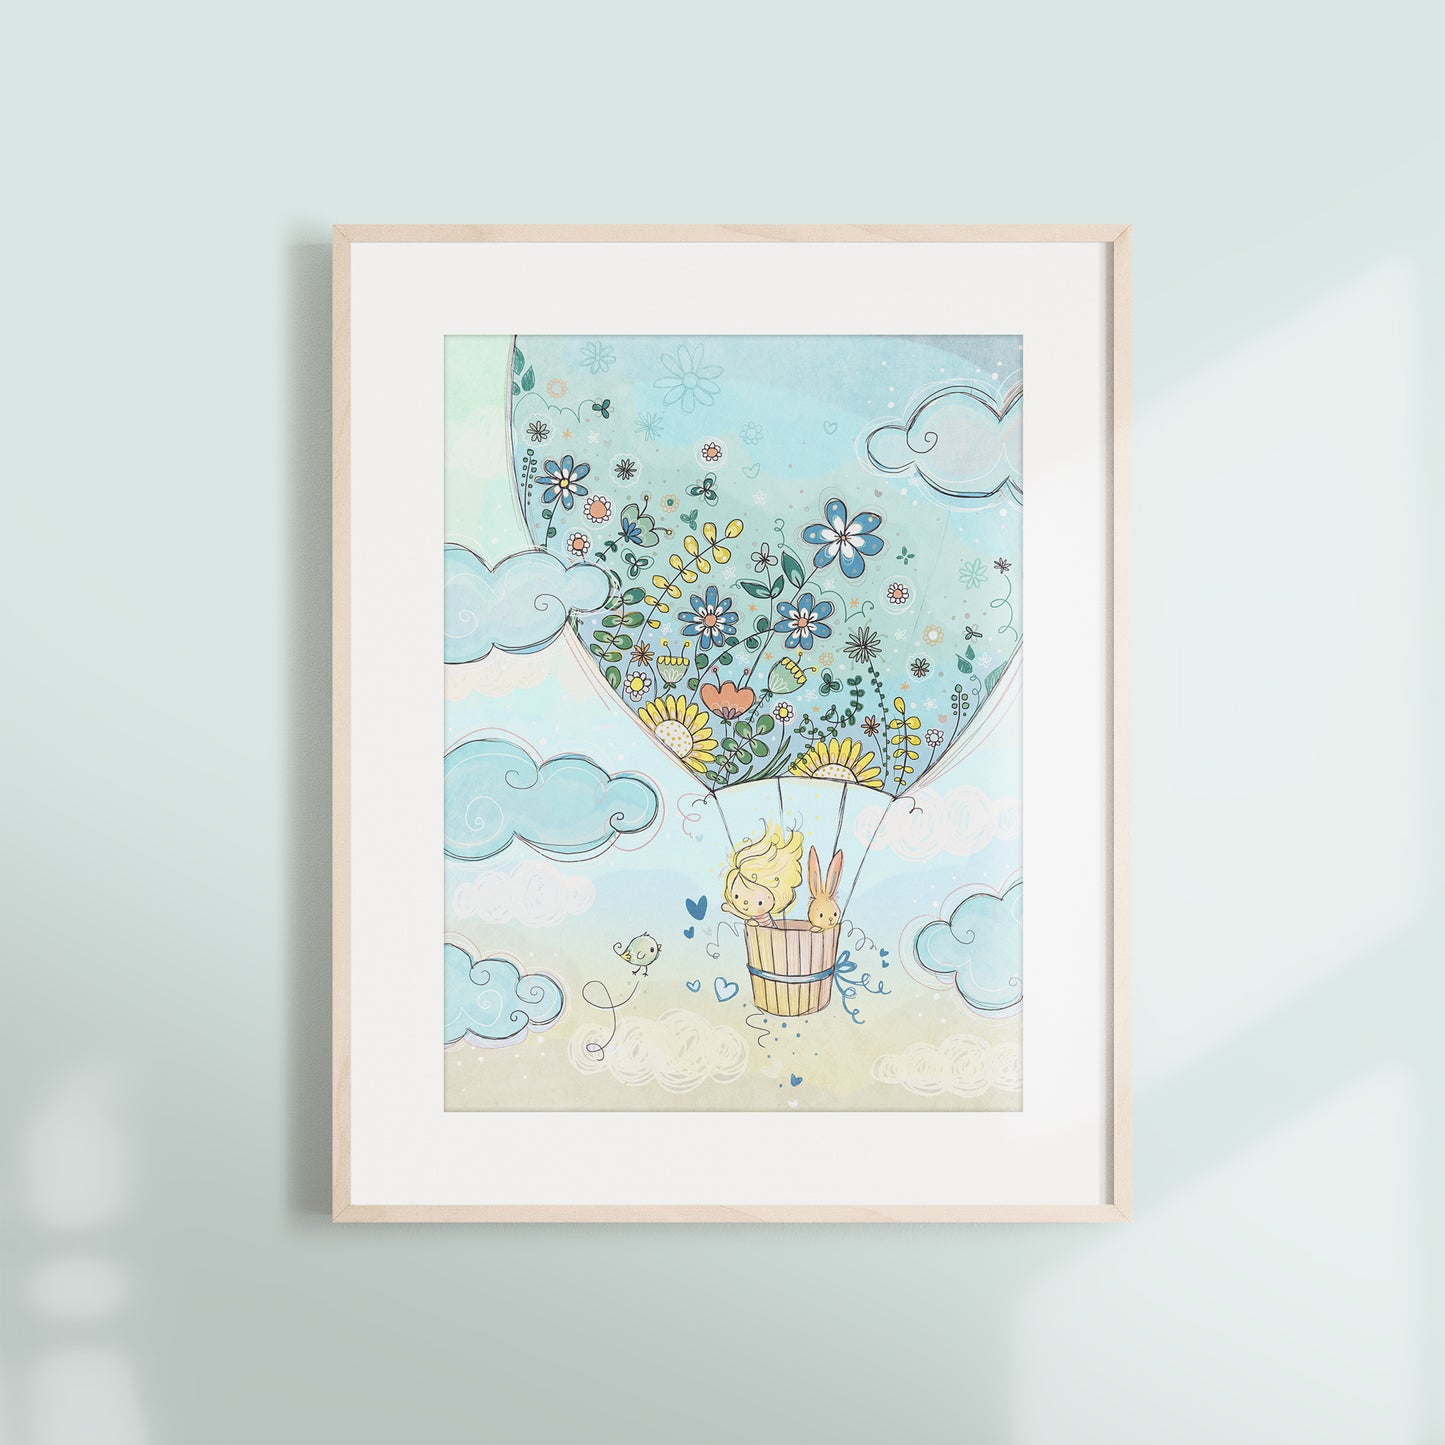 'Hot Air Balloon (Blue)' Children's Wall Art Print